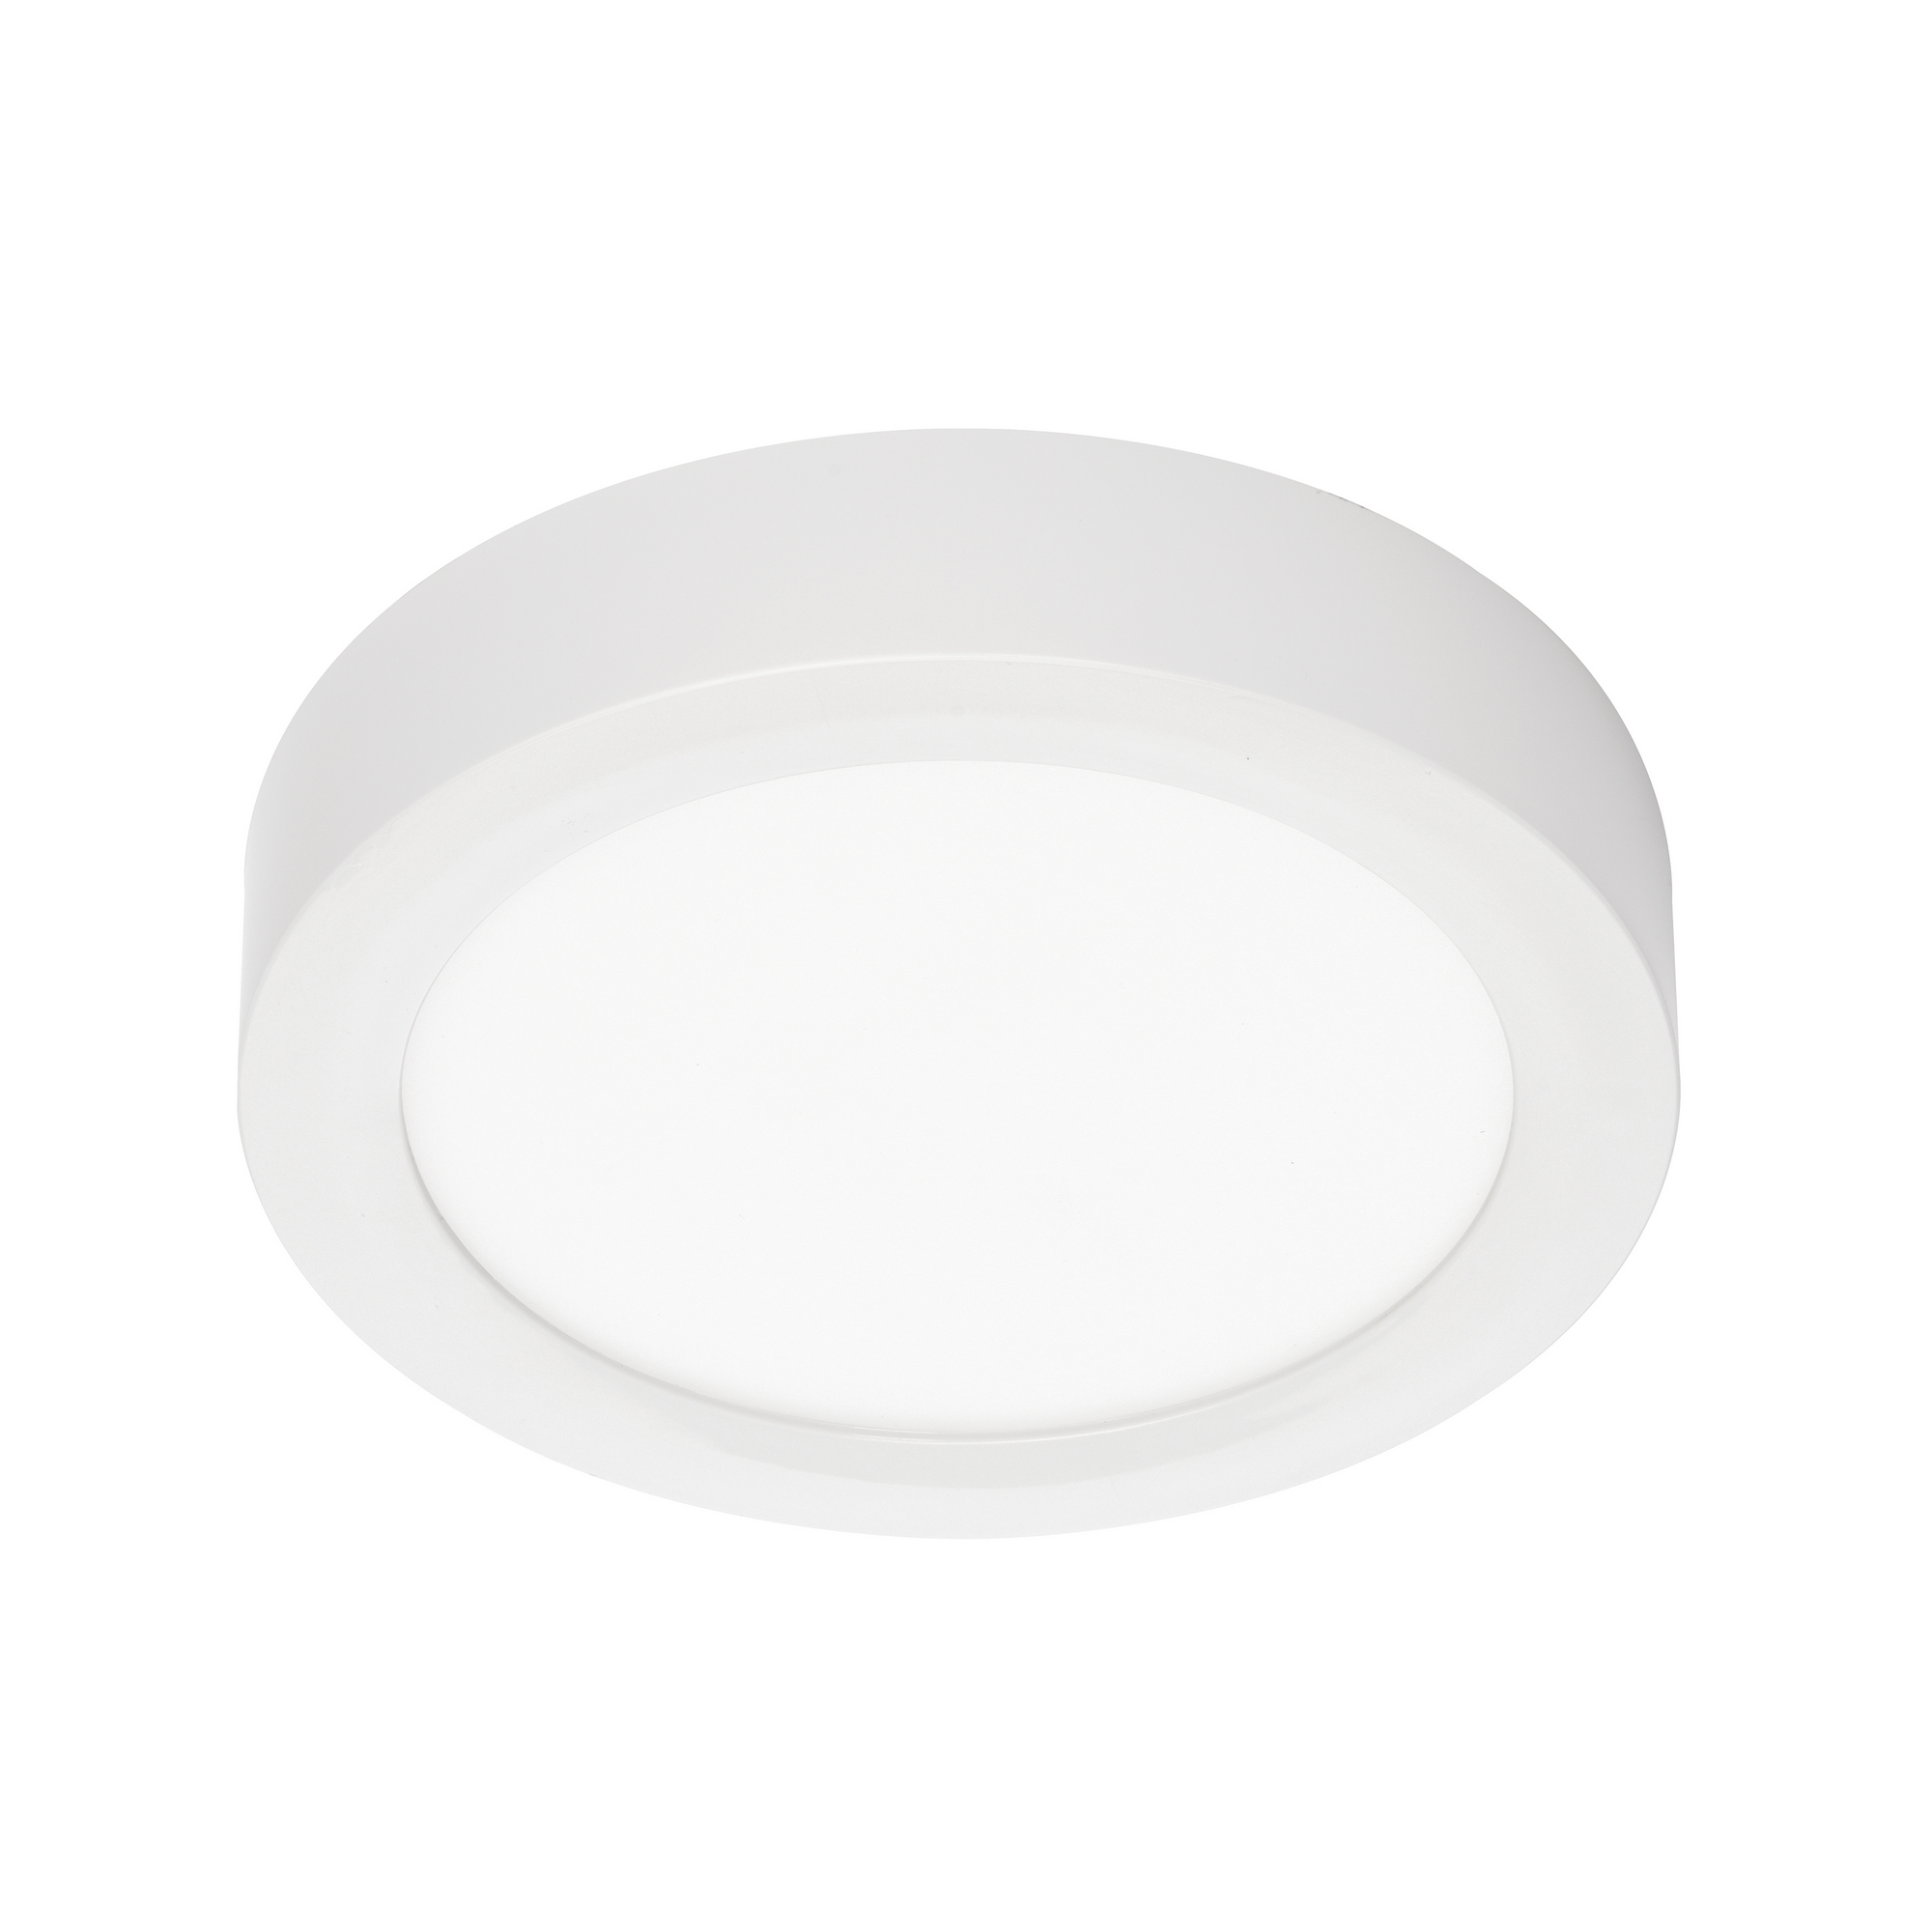 LED-Deckenleuchte weiß Ø 17 x 3,2 cm 1000 lm warmweiß + product picture